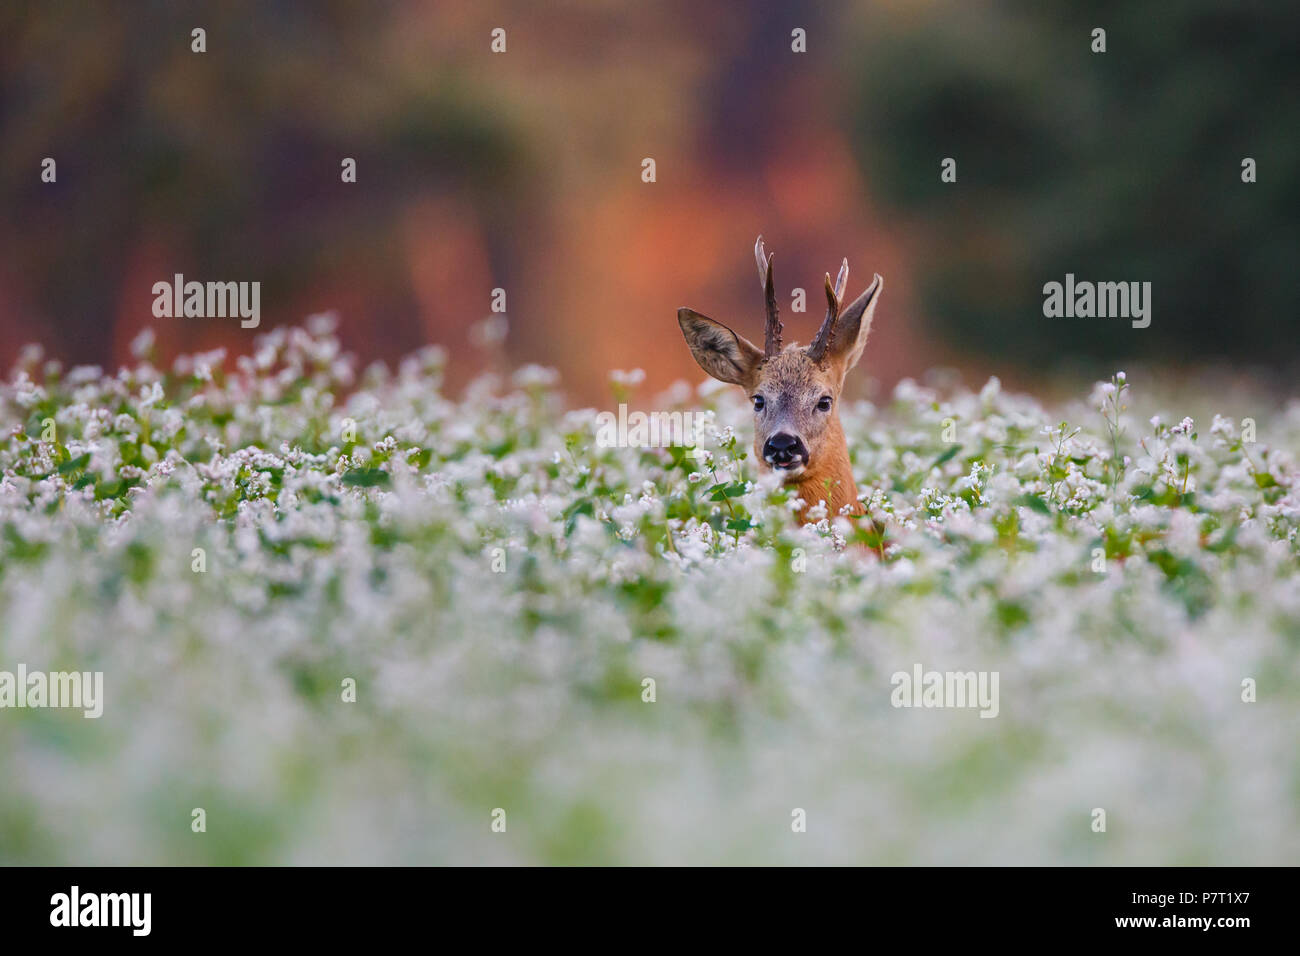 roe deer in a field of flowers Stock Photo